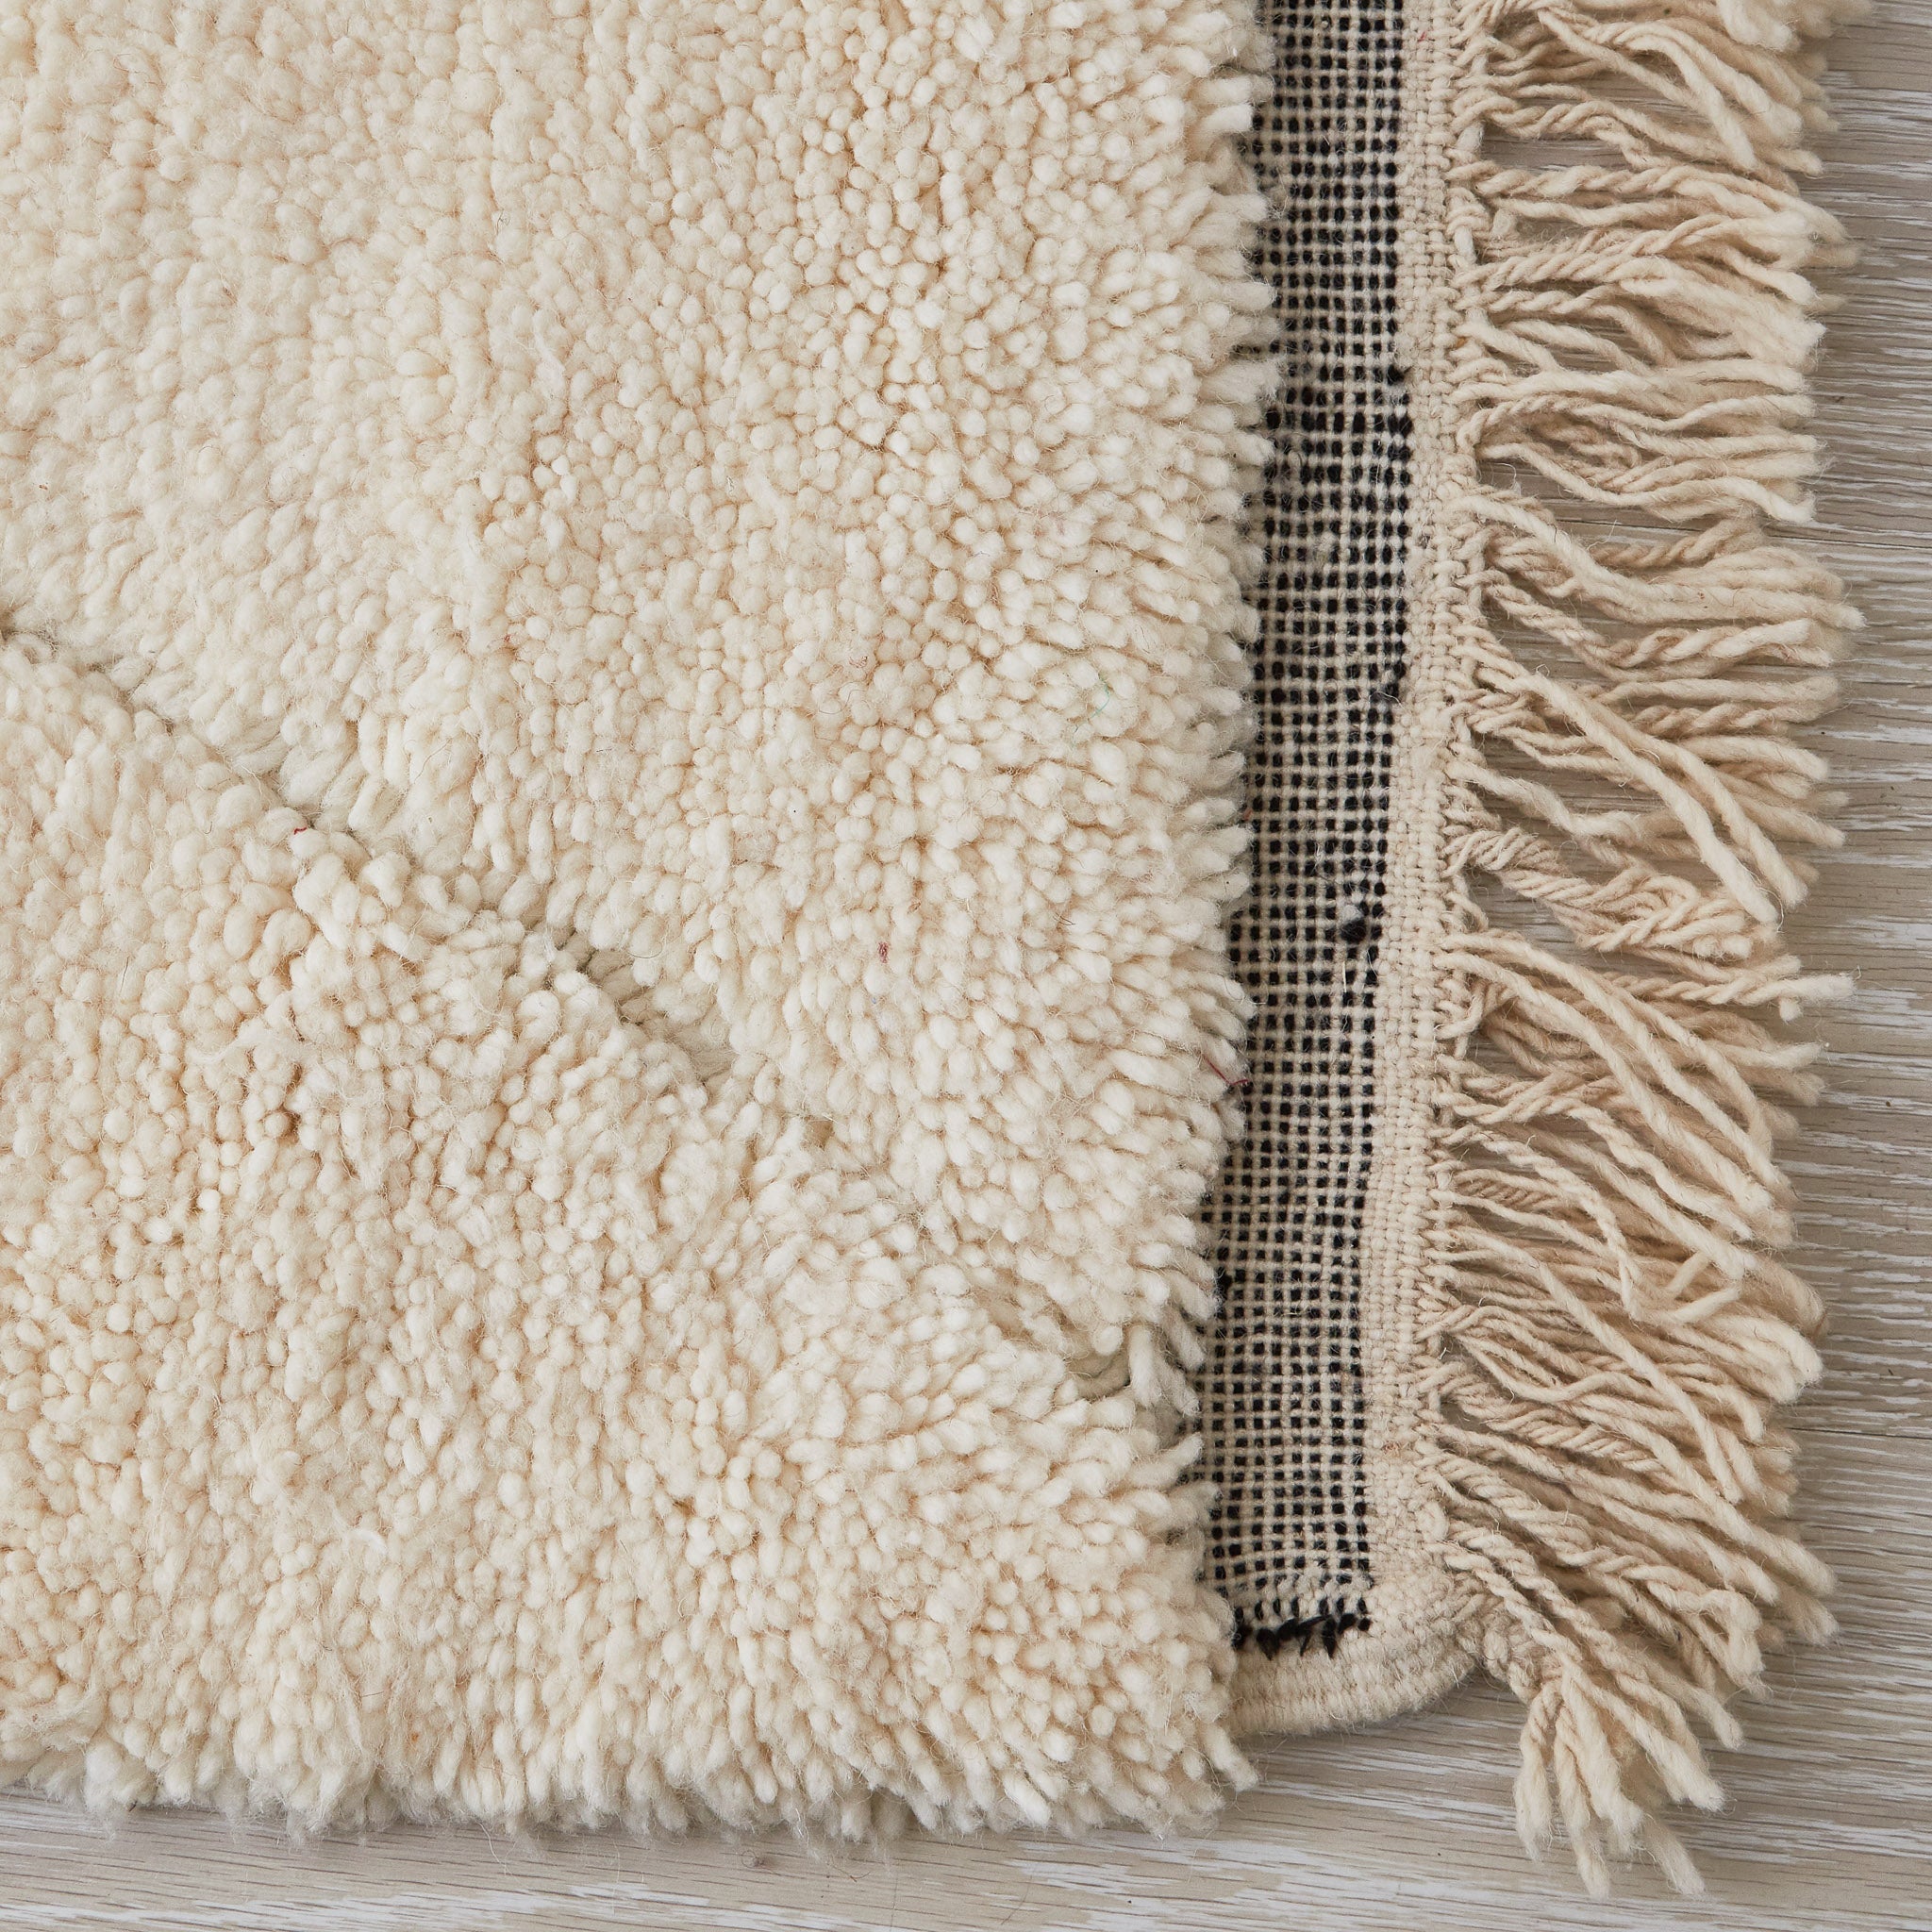 tappeto beni ourain con morbido pelo lungo a tinta unita e disegni geometrici con leggera rasatura dettaglio frangia e lato corto nero